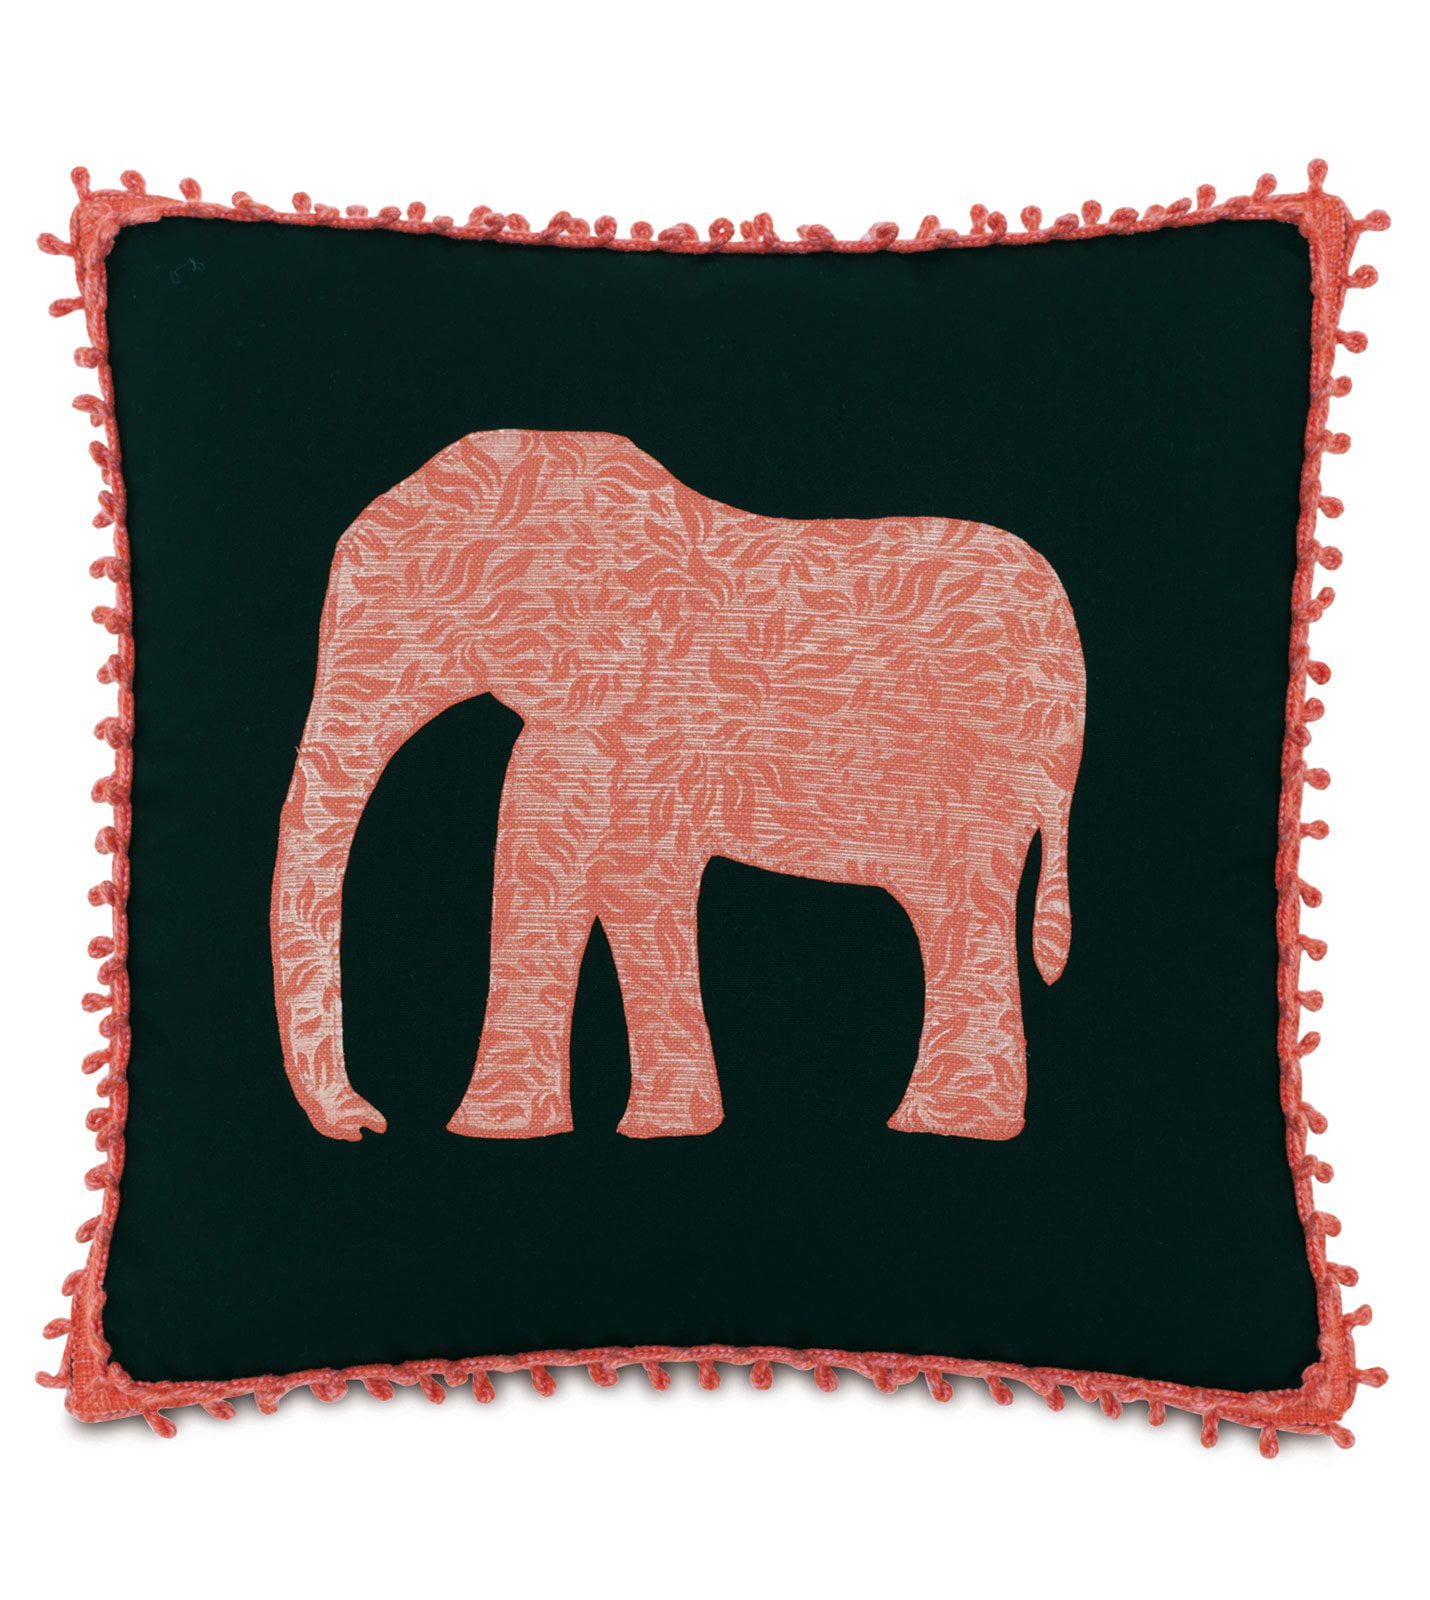 The Elephant in the Room Handmade Decorative Elephants on the March Cushion Cover Subtle Pink Fait à la main Décoratifs Housse de Coussin Elephants Rose Size 45cm x 45cm 18” x 18.